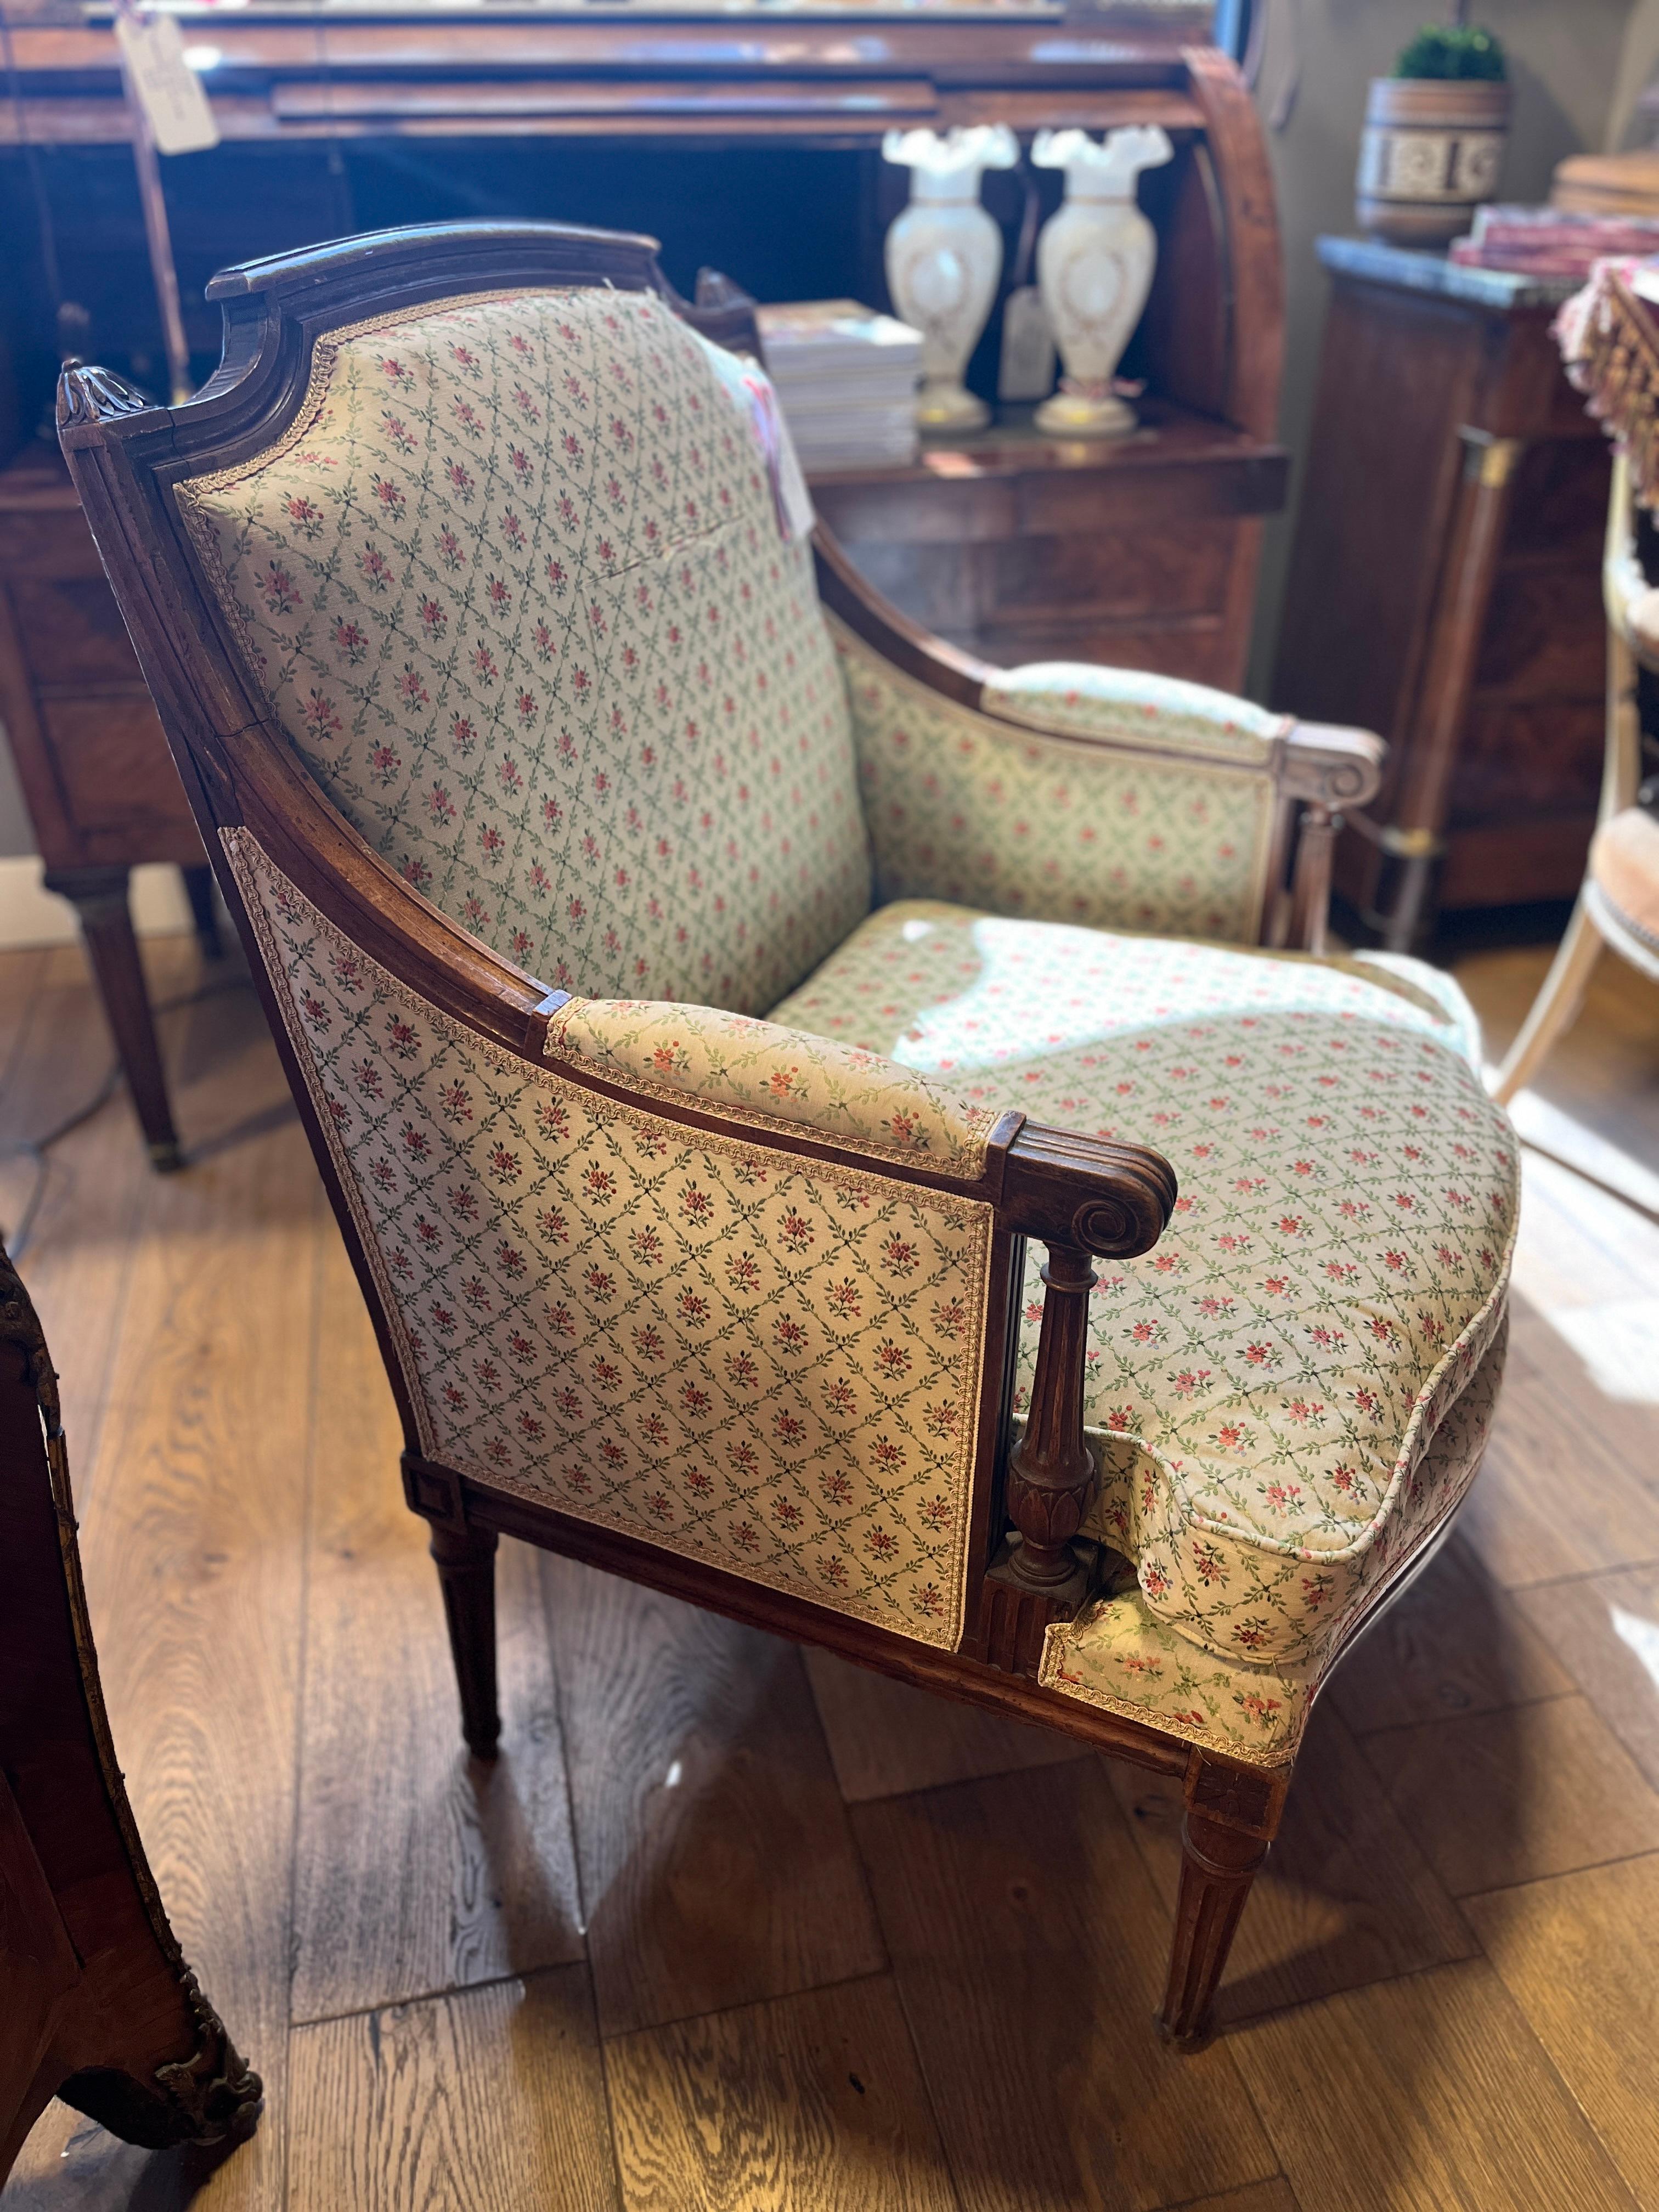 Fauteuil Marquis Louis XVI du 18ème siècle. Très belle forme.  Les chaises Marquis sont légèrement plus larges et cette chaise est unique. Idéal pour toutes les pièces.